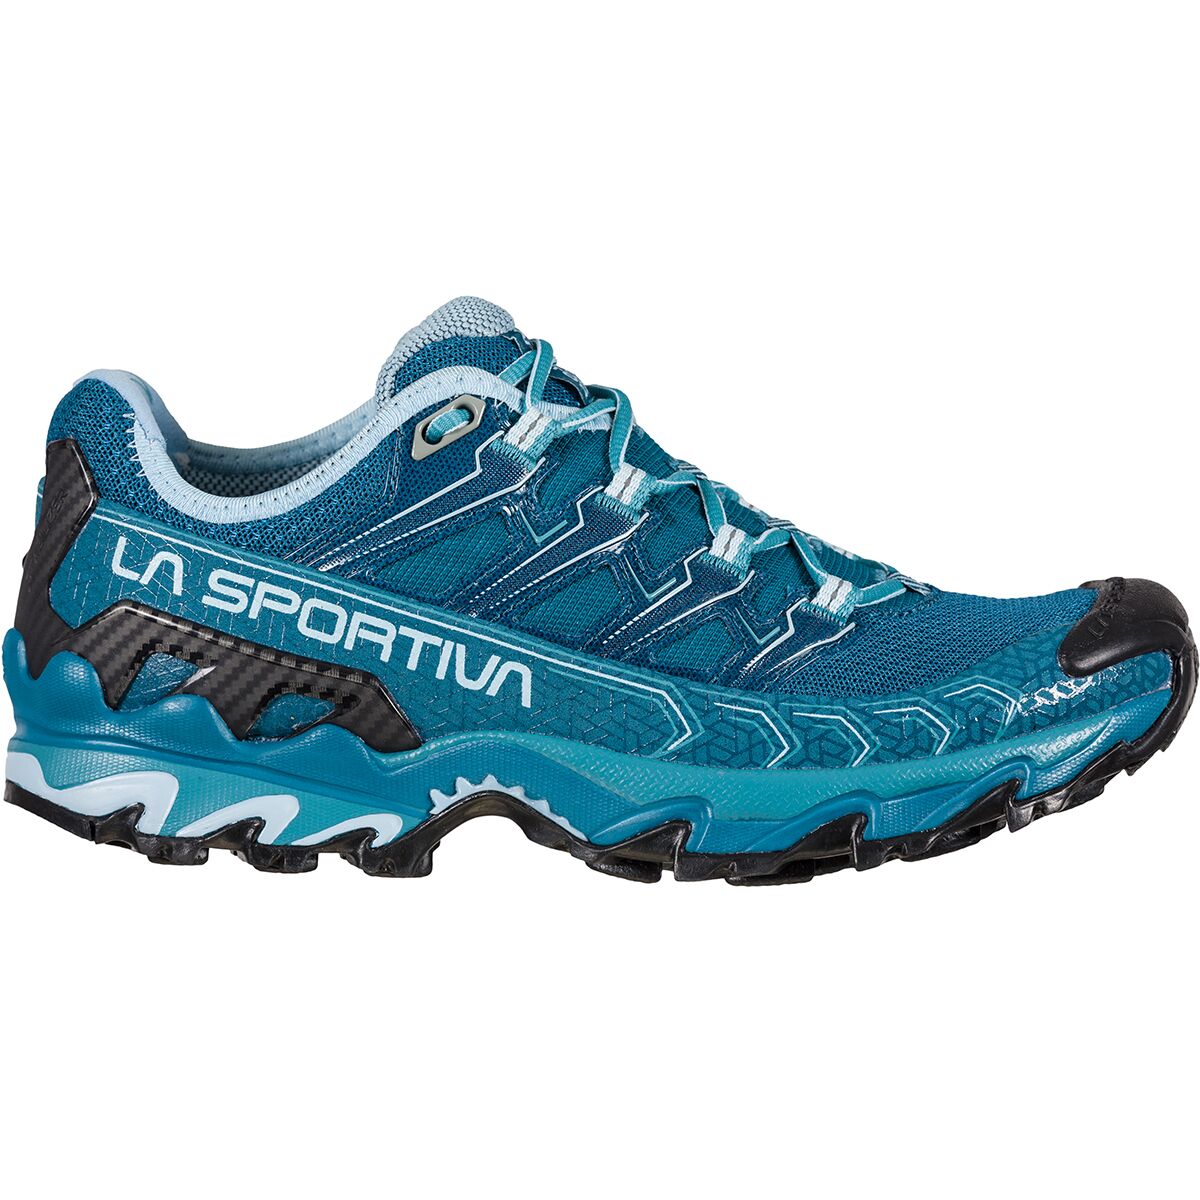 Ultra Raptor II Trail Running Shoe - Women's Footwear